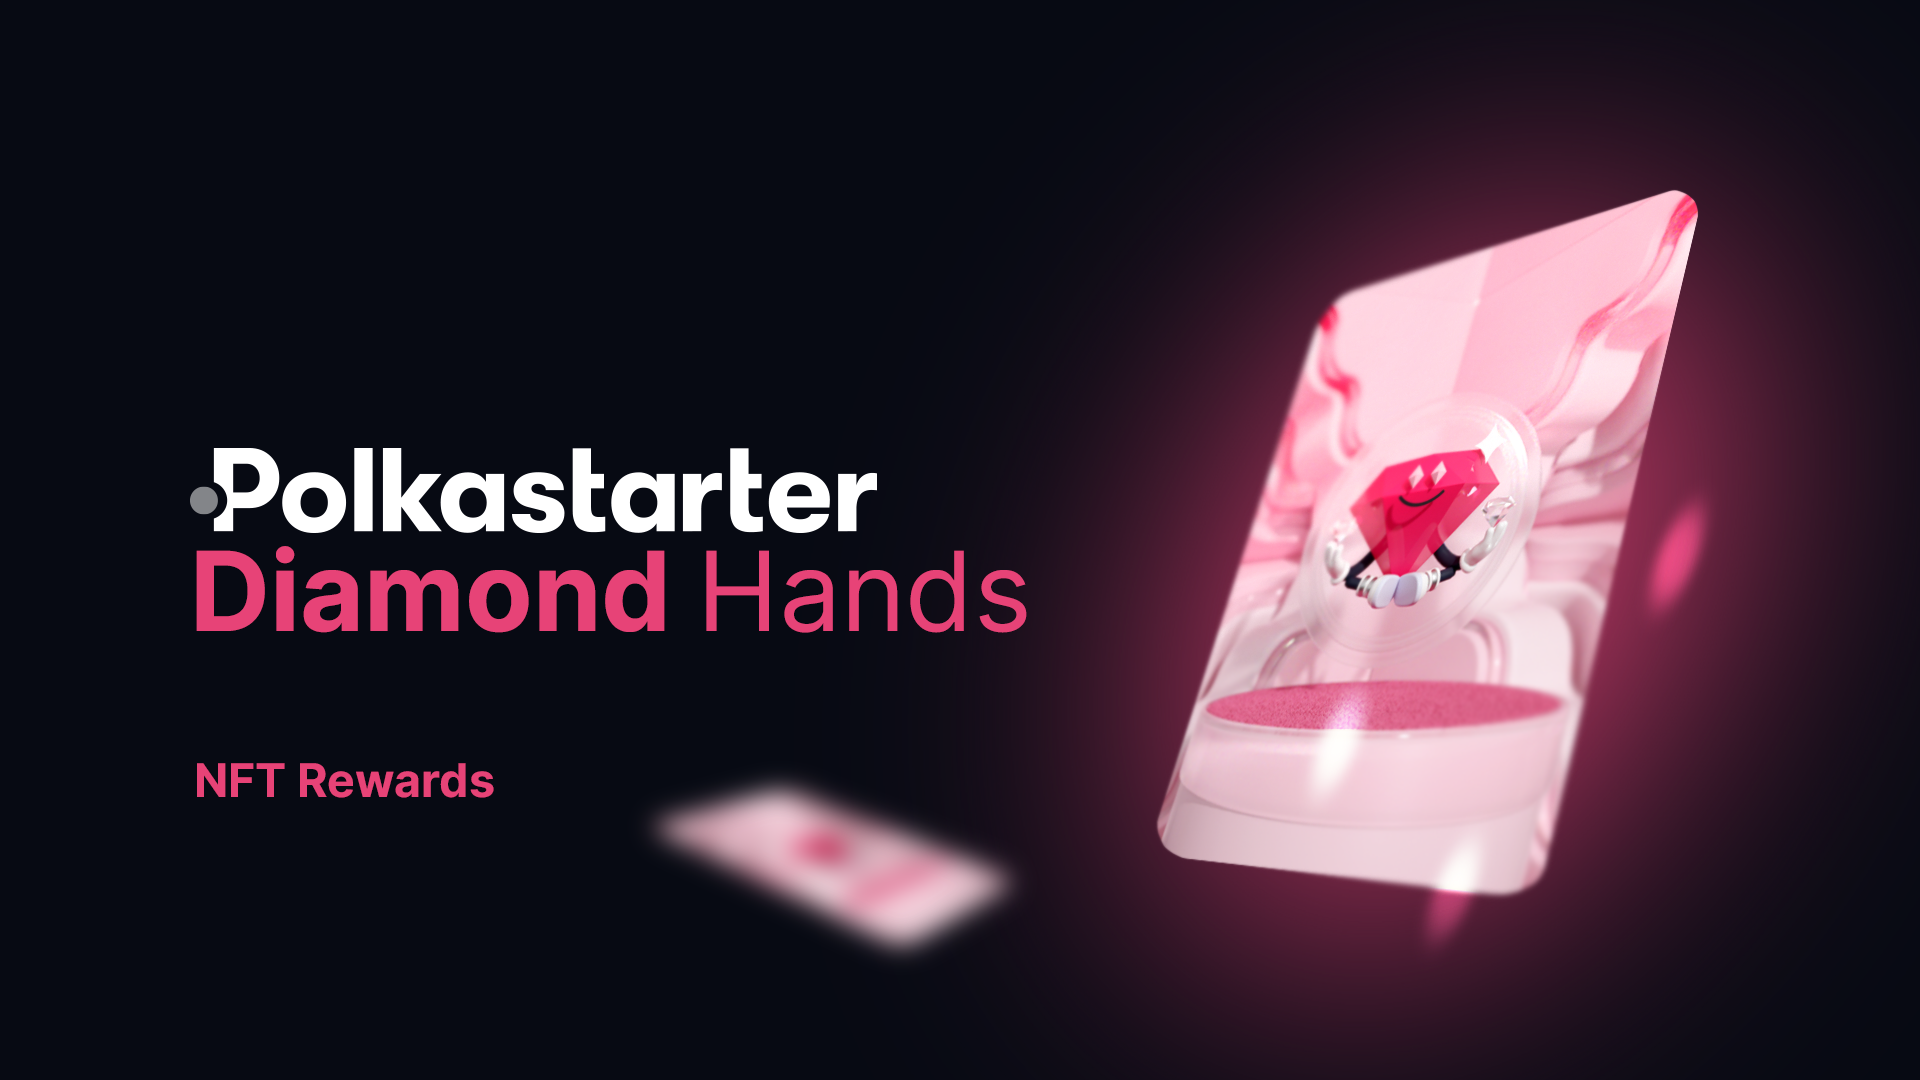 [PolkaStarter] Thưởng Polkastarter Diamond Hands bằng NFT phiên bản giới hạn, Paulie!